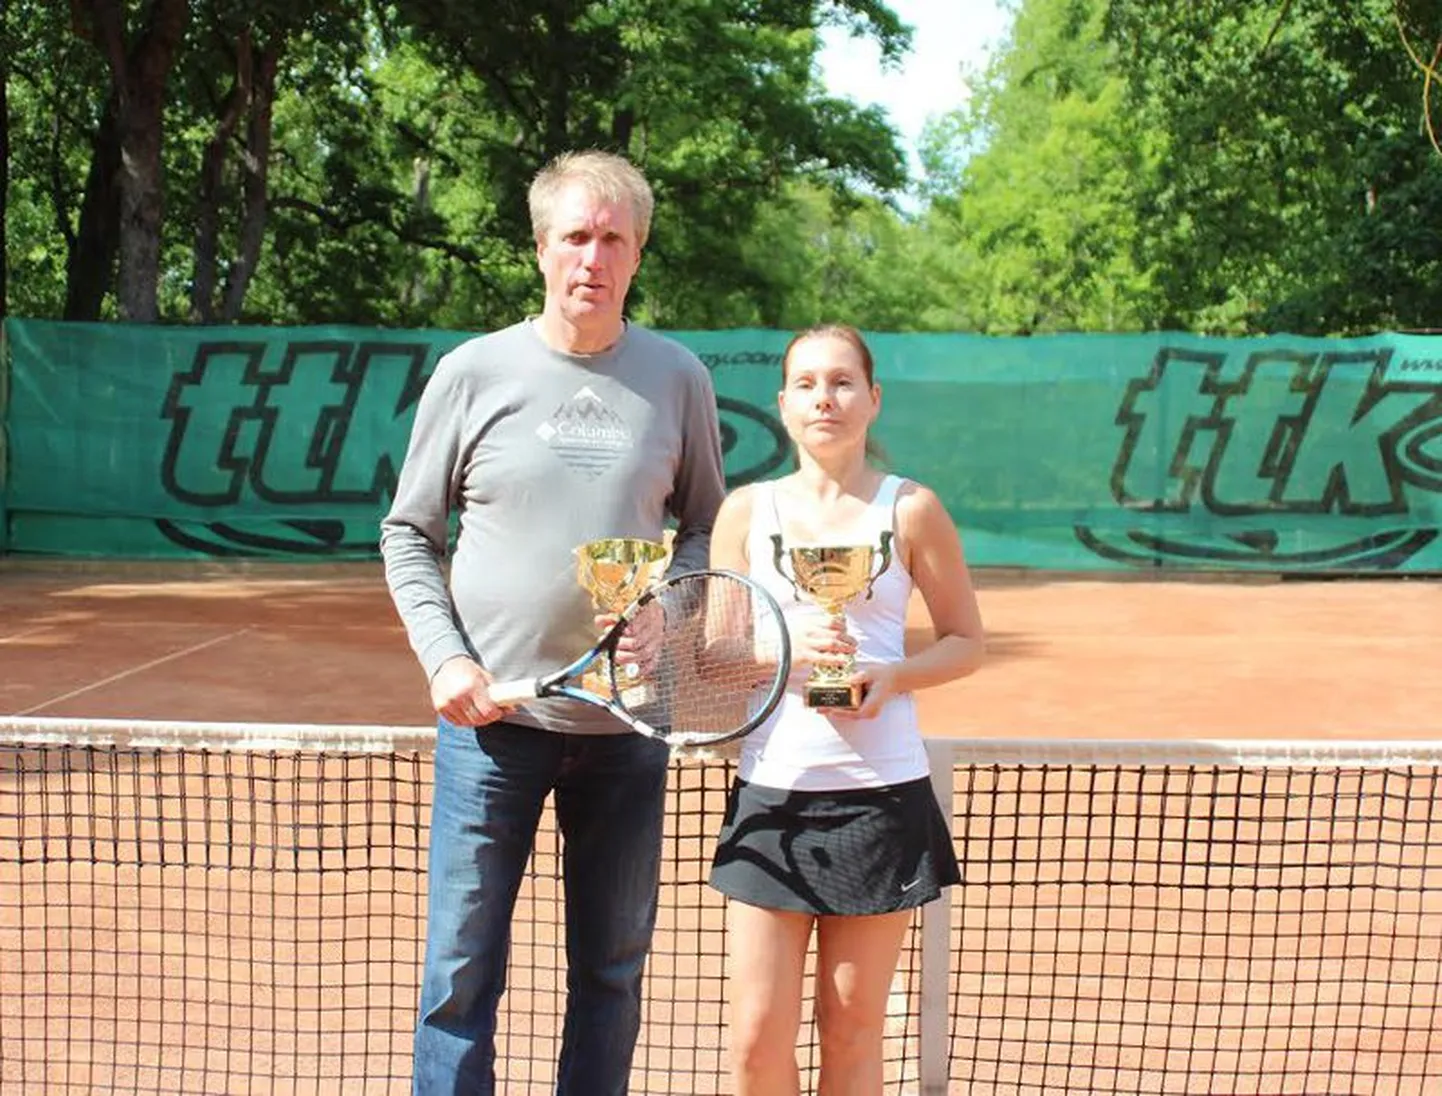 Rakvere linnapäevade puhul toimunud tenniseturniiri võitis Peep Priisalu ning Kristiina Saare duo.